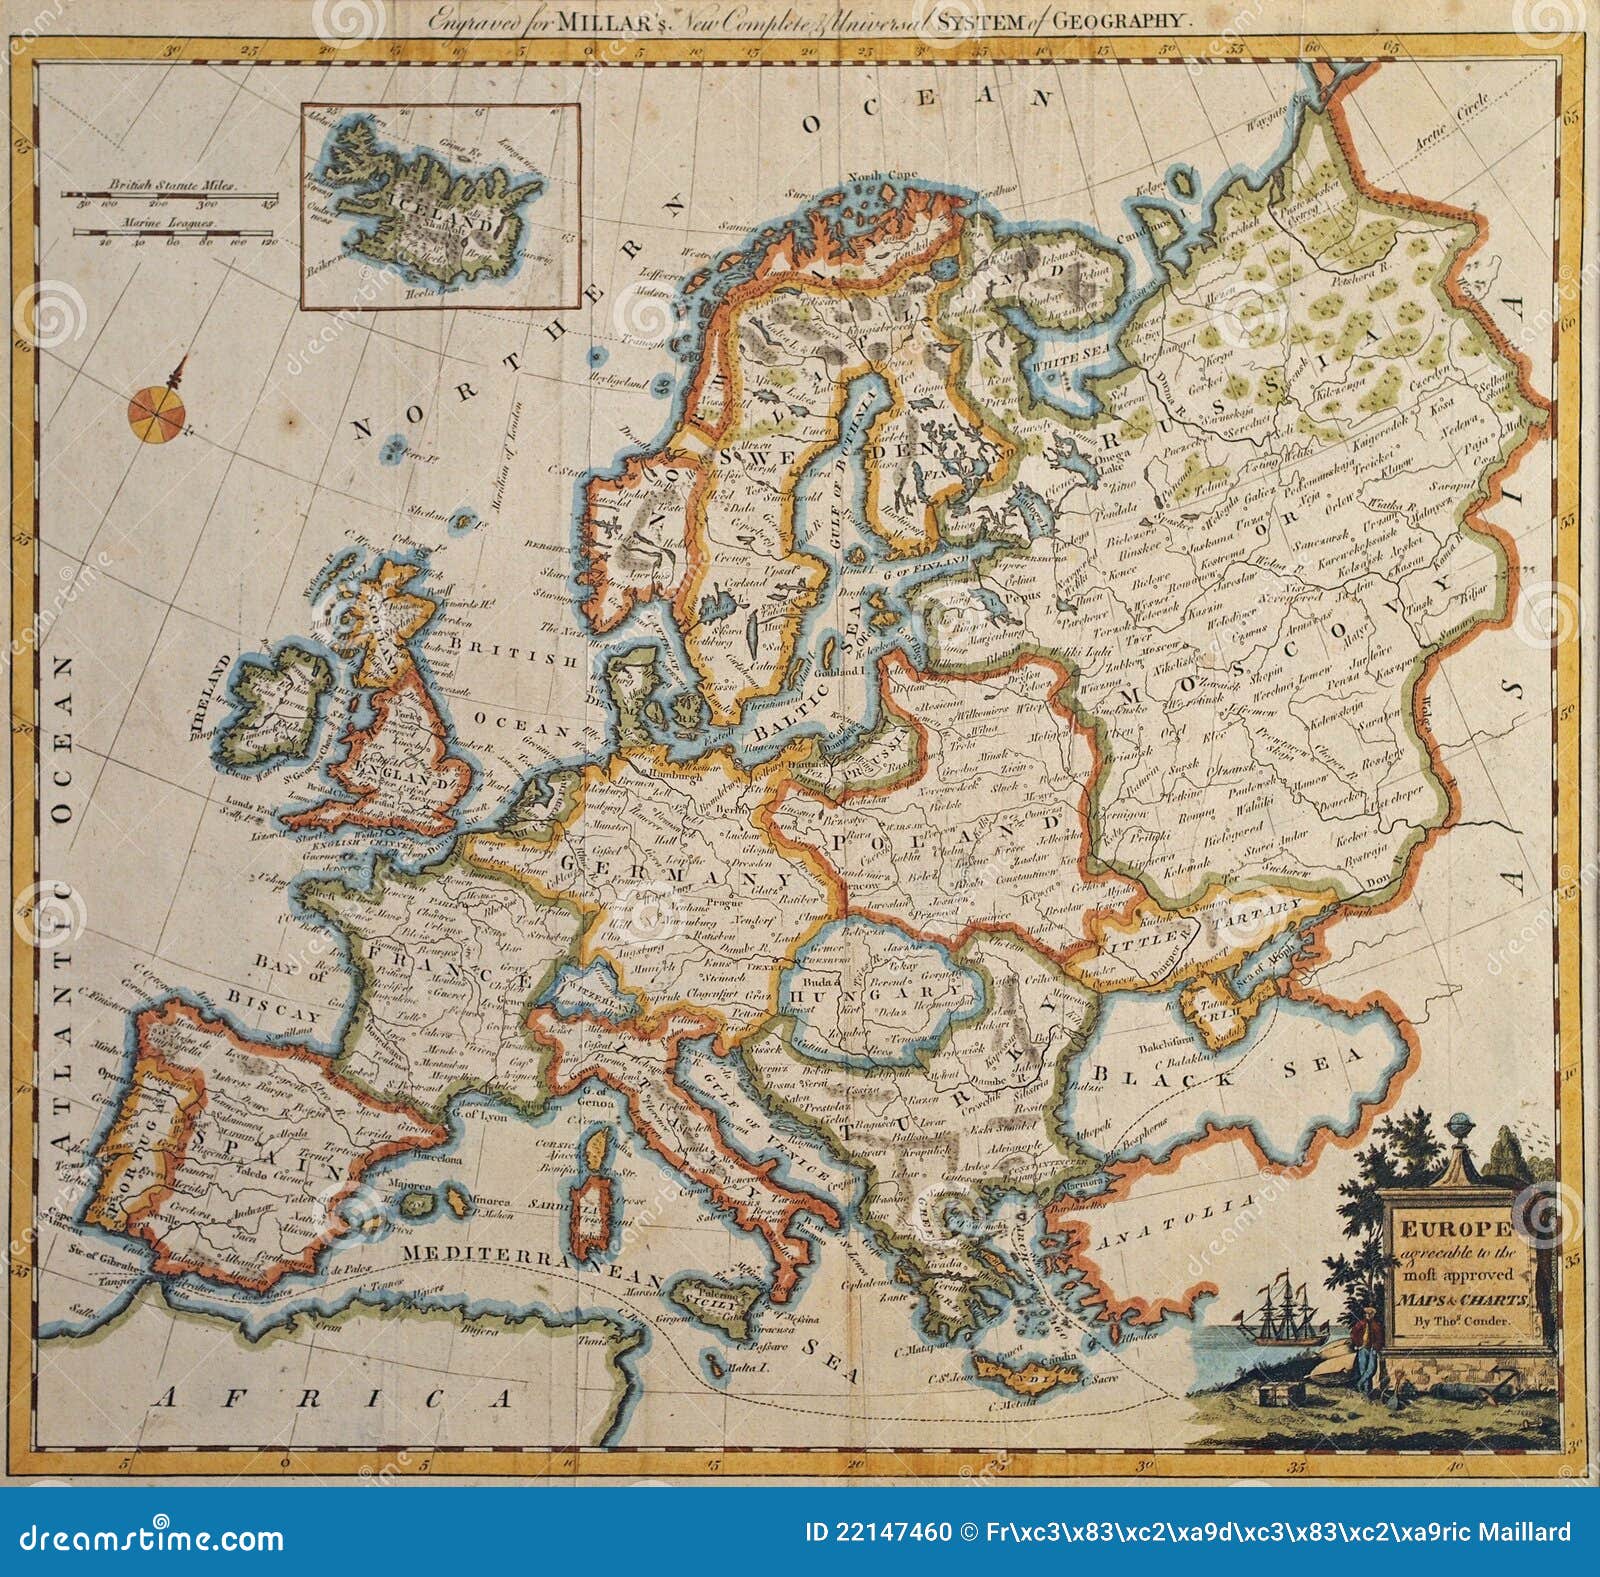 Preços baixos em Mapa Político de Portugal Mapas antigos da Europa Atlas